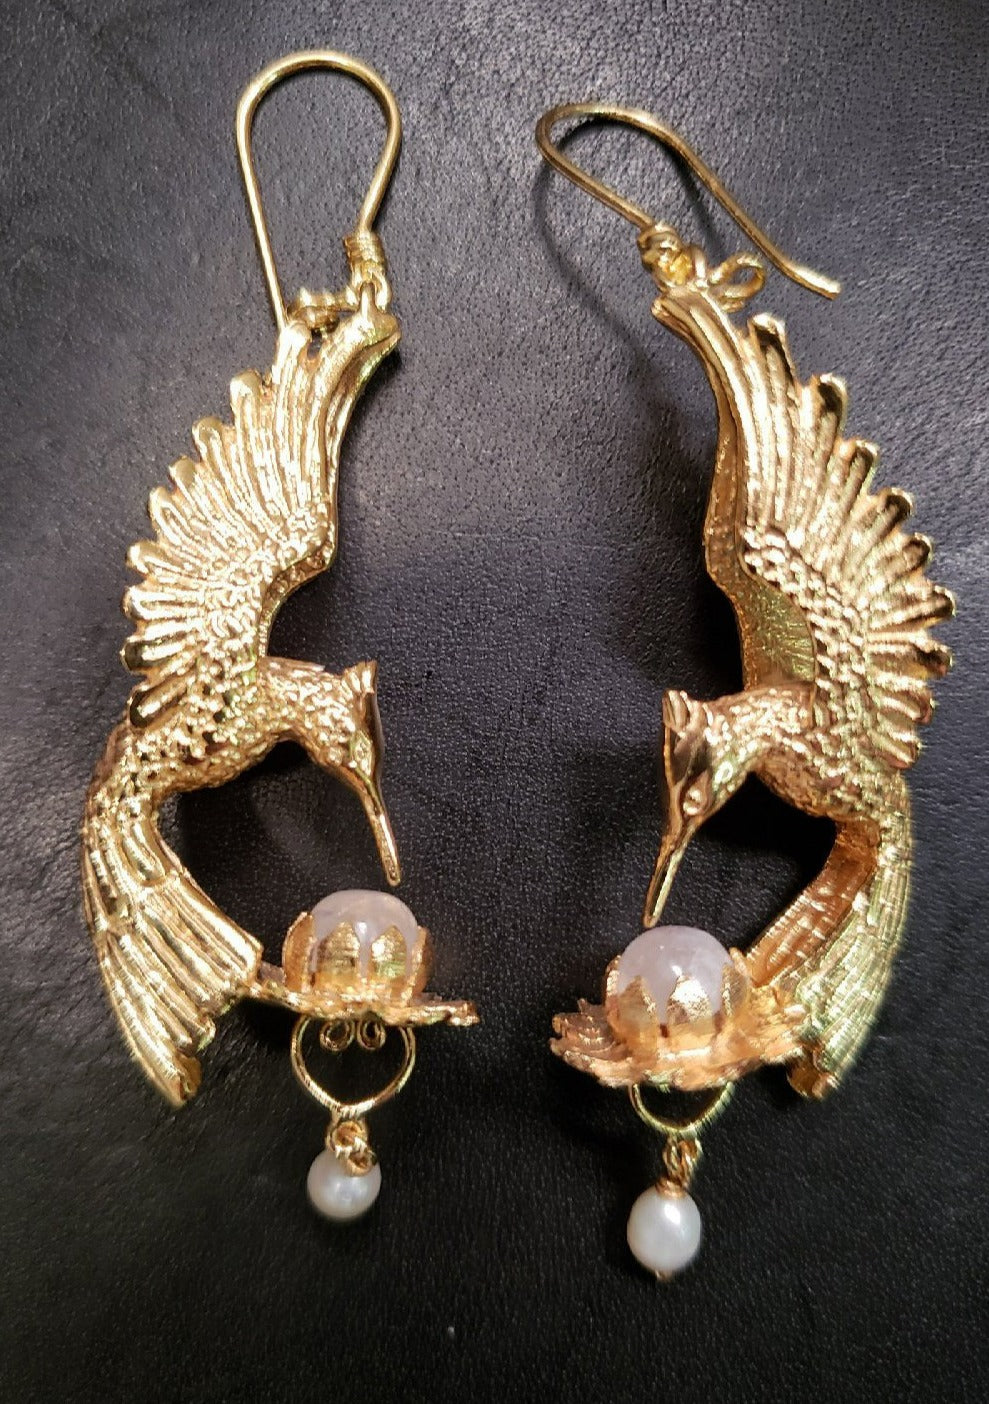 Hummingbird Lotus Earrings - 24K Gold Plated - Rainbow Moonstone